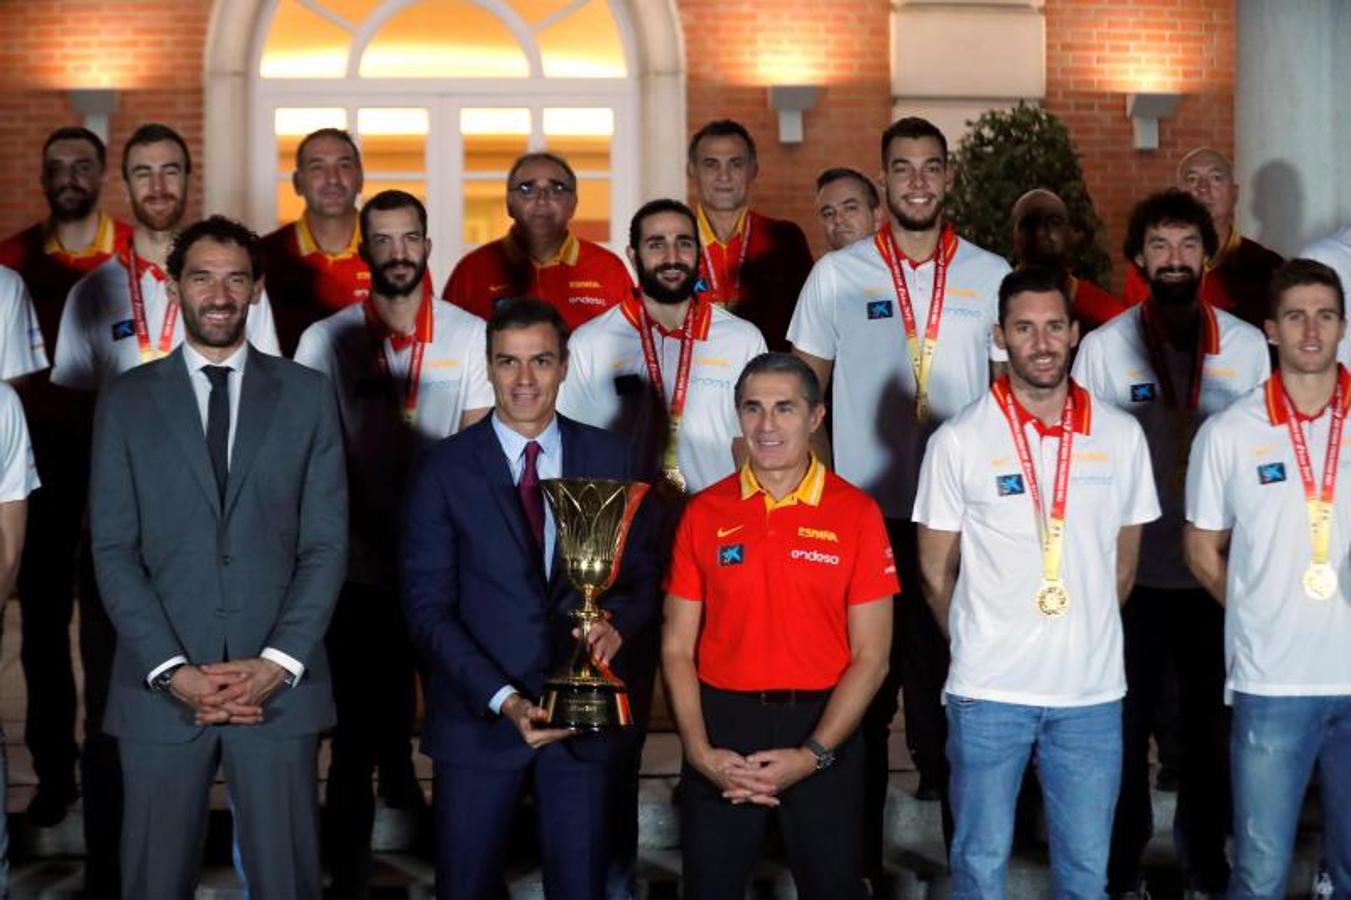 La selección española de baloncesto aterrizó a las 17:45 en Madrid, tras conquistar en Pekín el segundo mundial de su historia